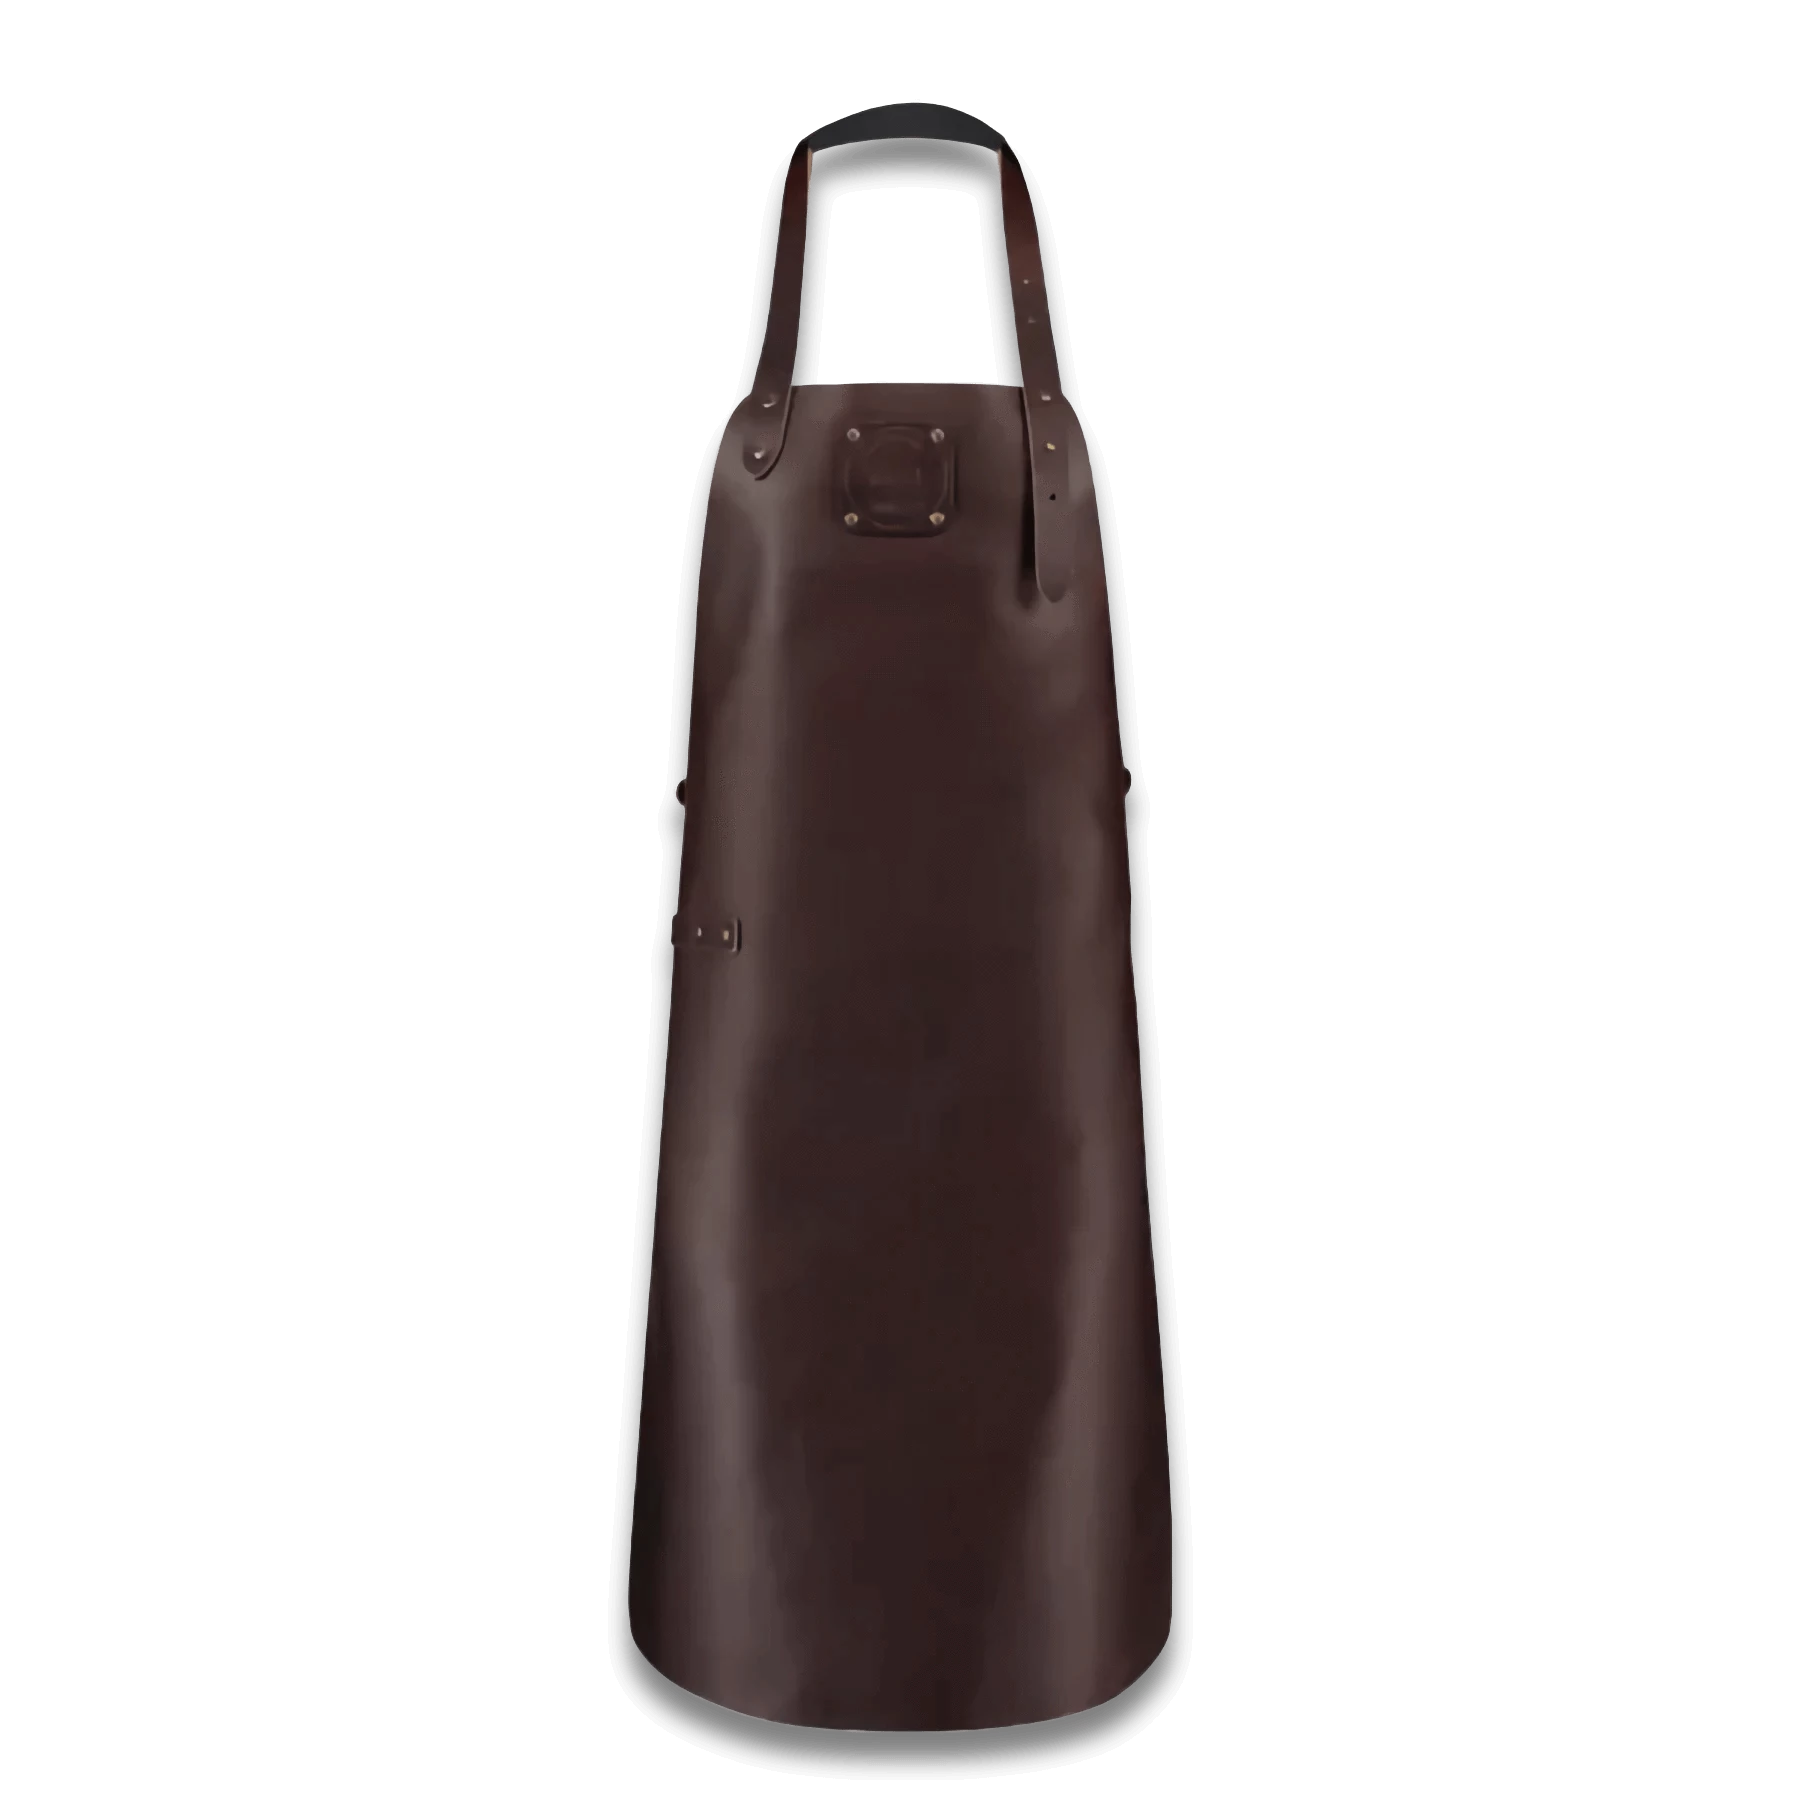 WITLOFT - Handcrafted Classic Leather Apron DarkBrown/Dark Brown